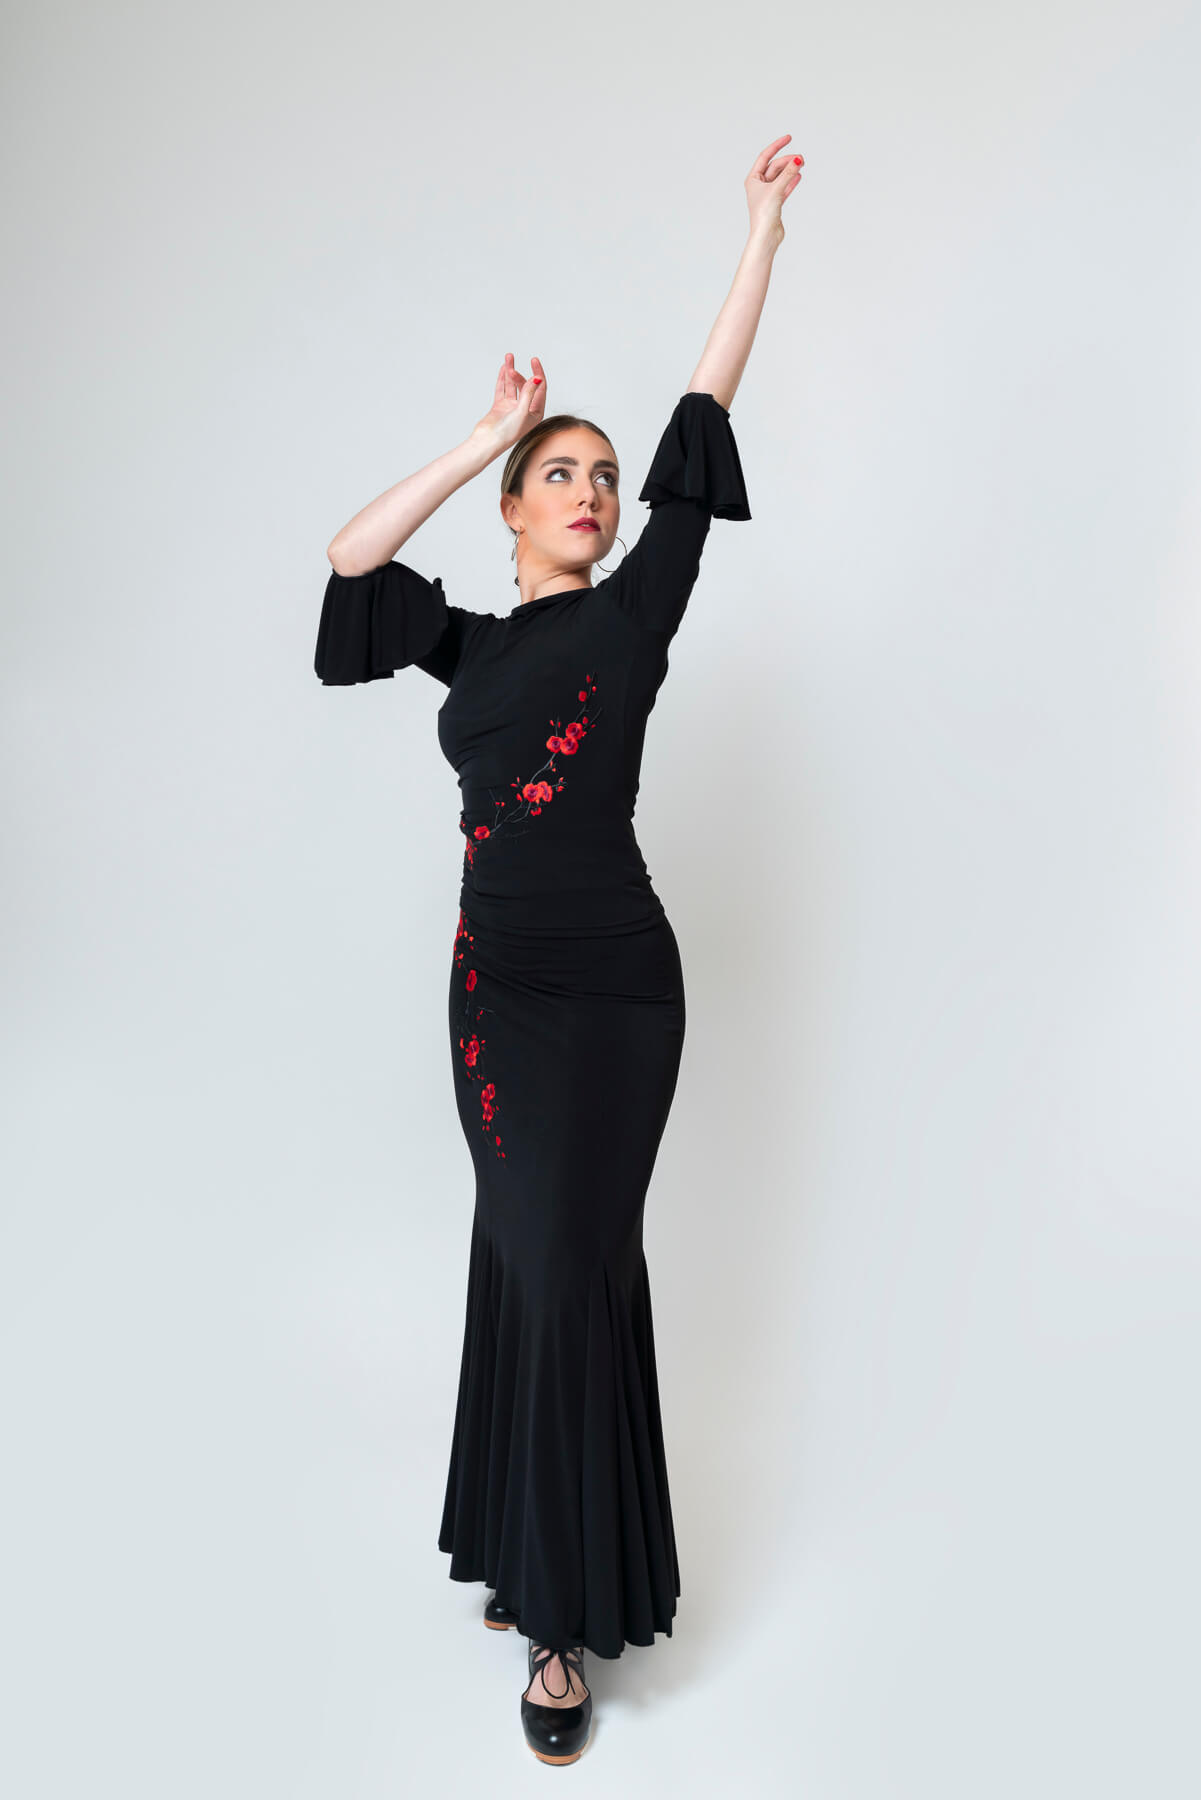 Faldas flamencas de cintura alta Stretch para Señora de color negro, son  faldas de flamenca de cintura alta con do…